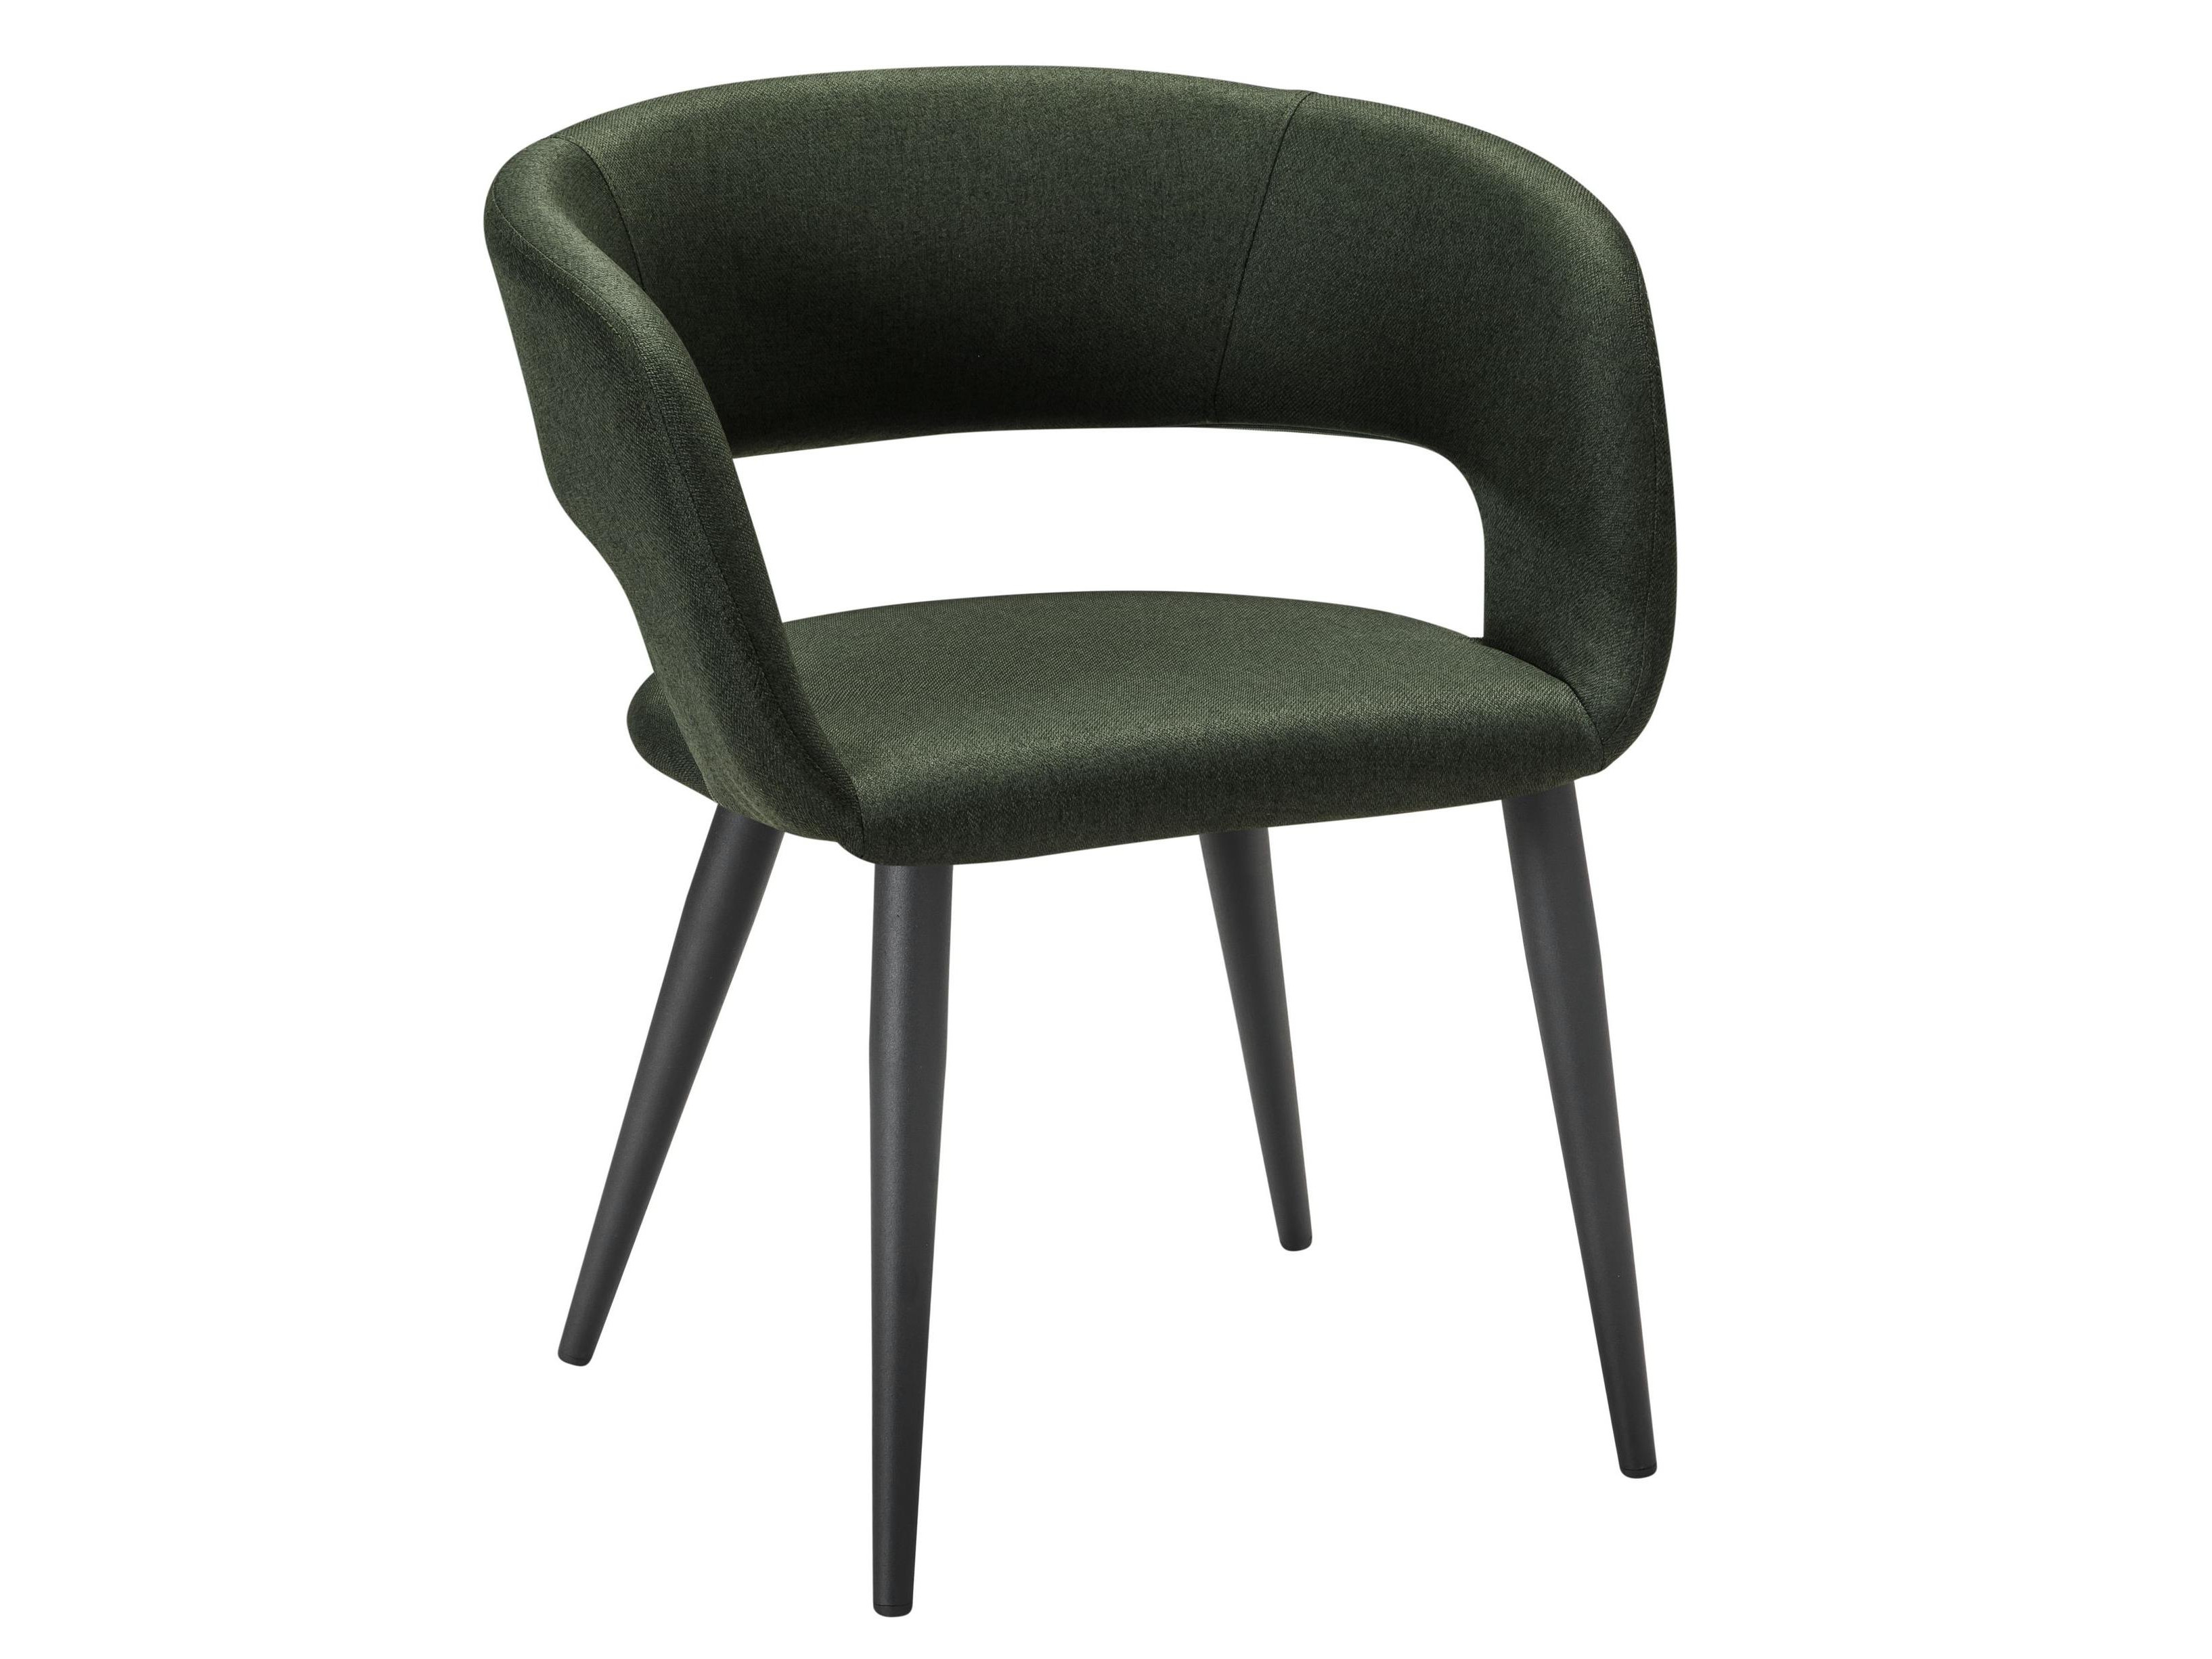 Кресло Hugs тёмно-зеленый/черный Зеленый, Металл подвесное кресло цвет плетения черный подушка зеленый каркас черный маленькое